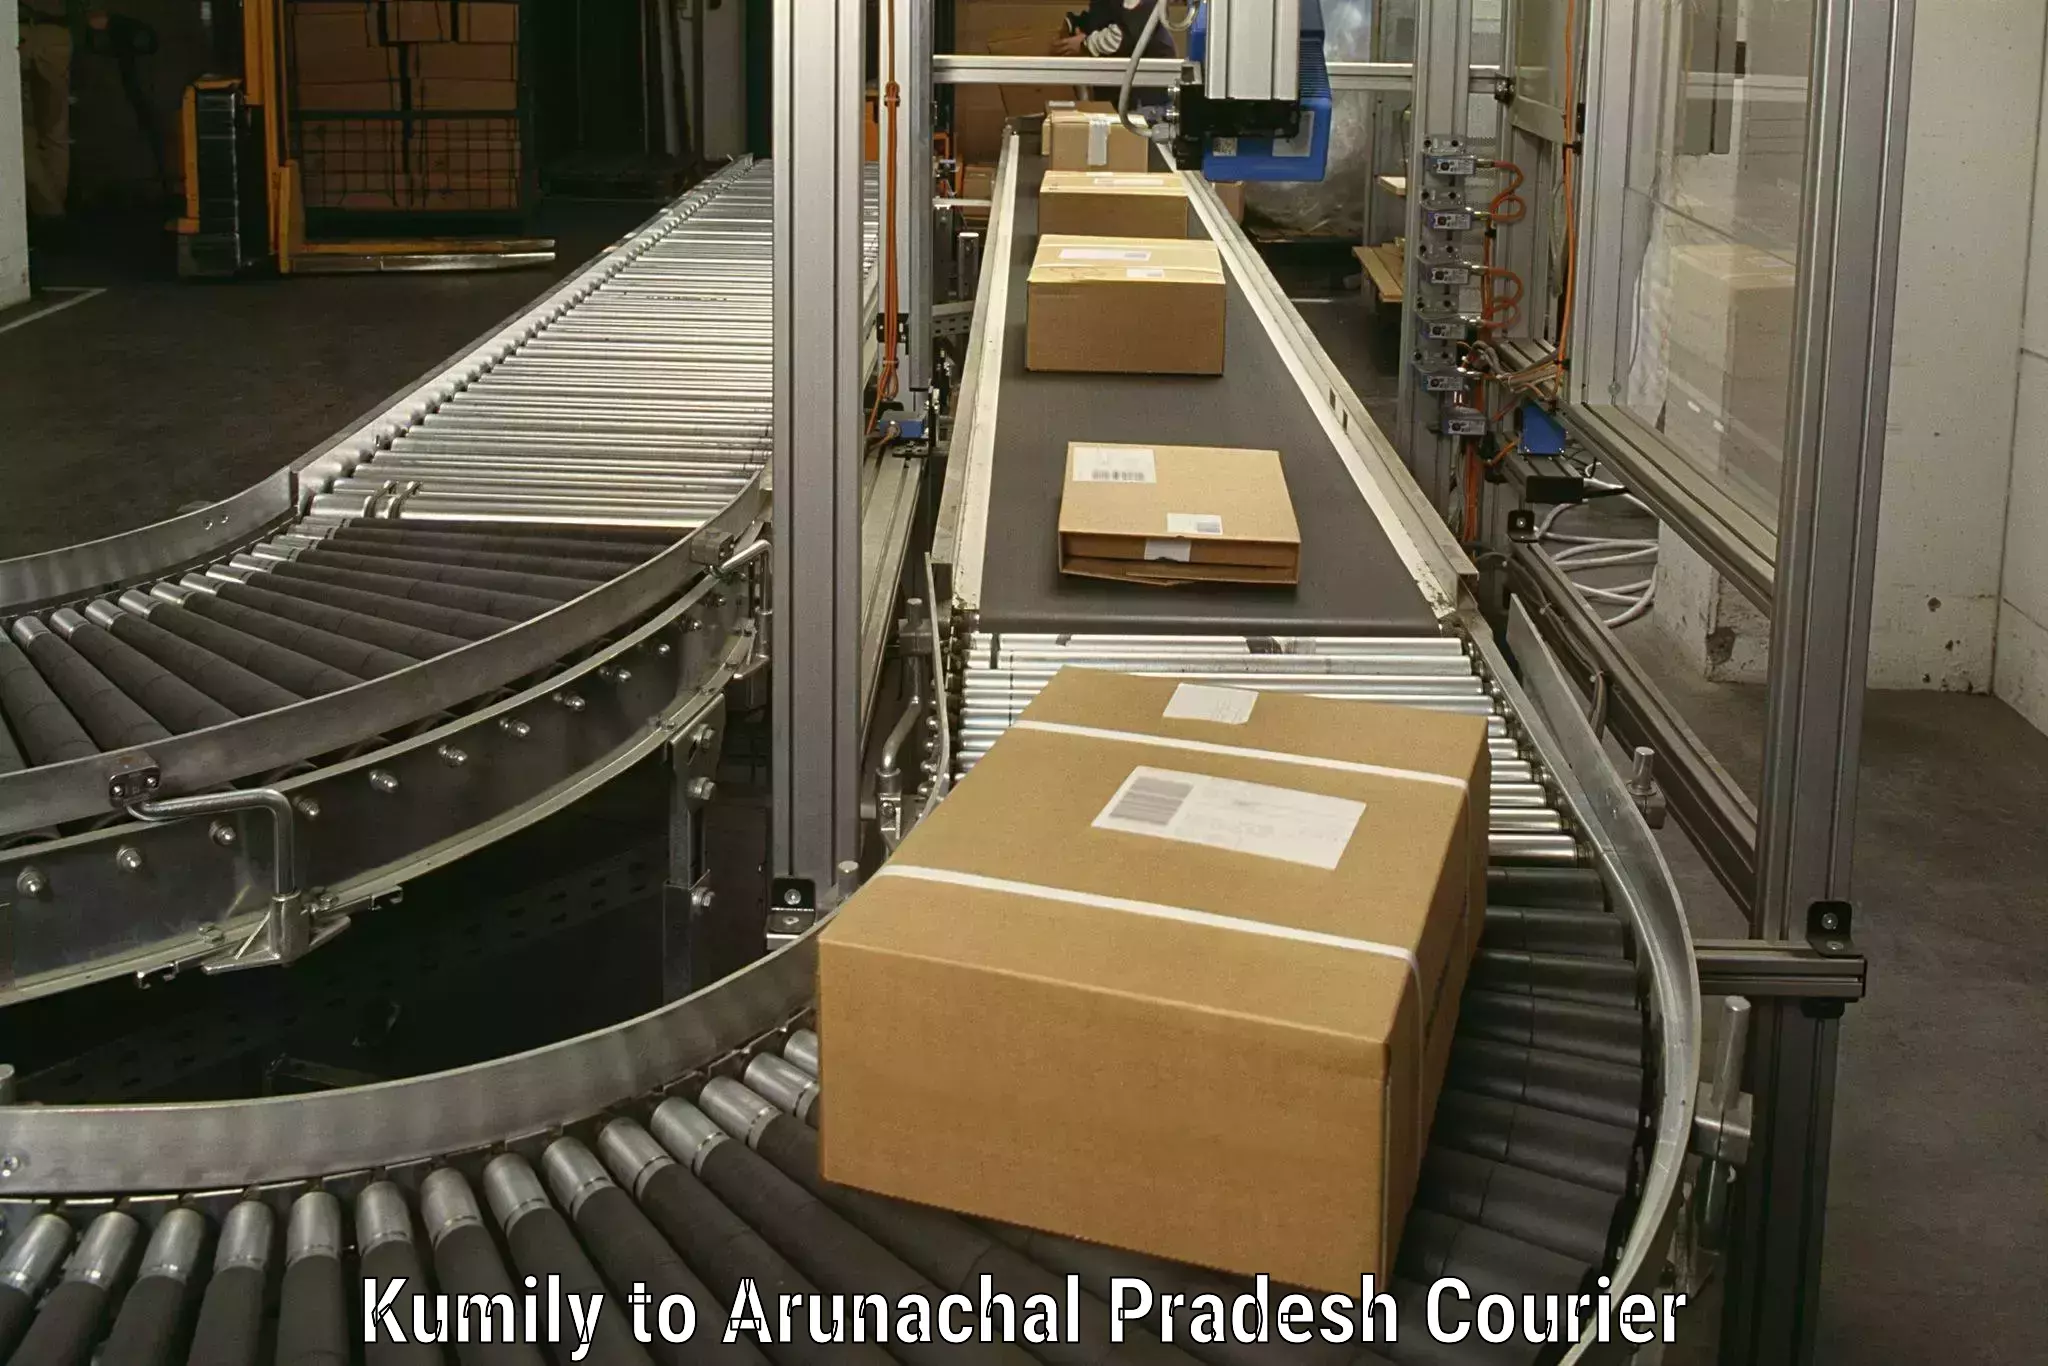 Professional movers in Kumily to Arunachal Pradesh